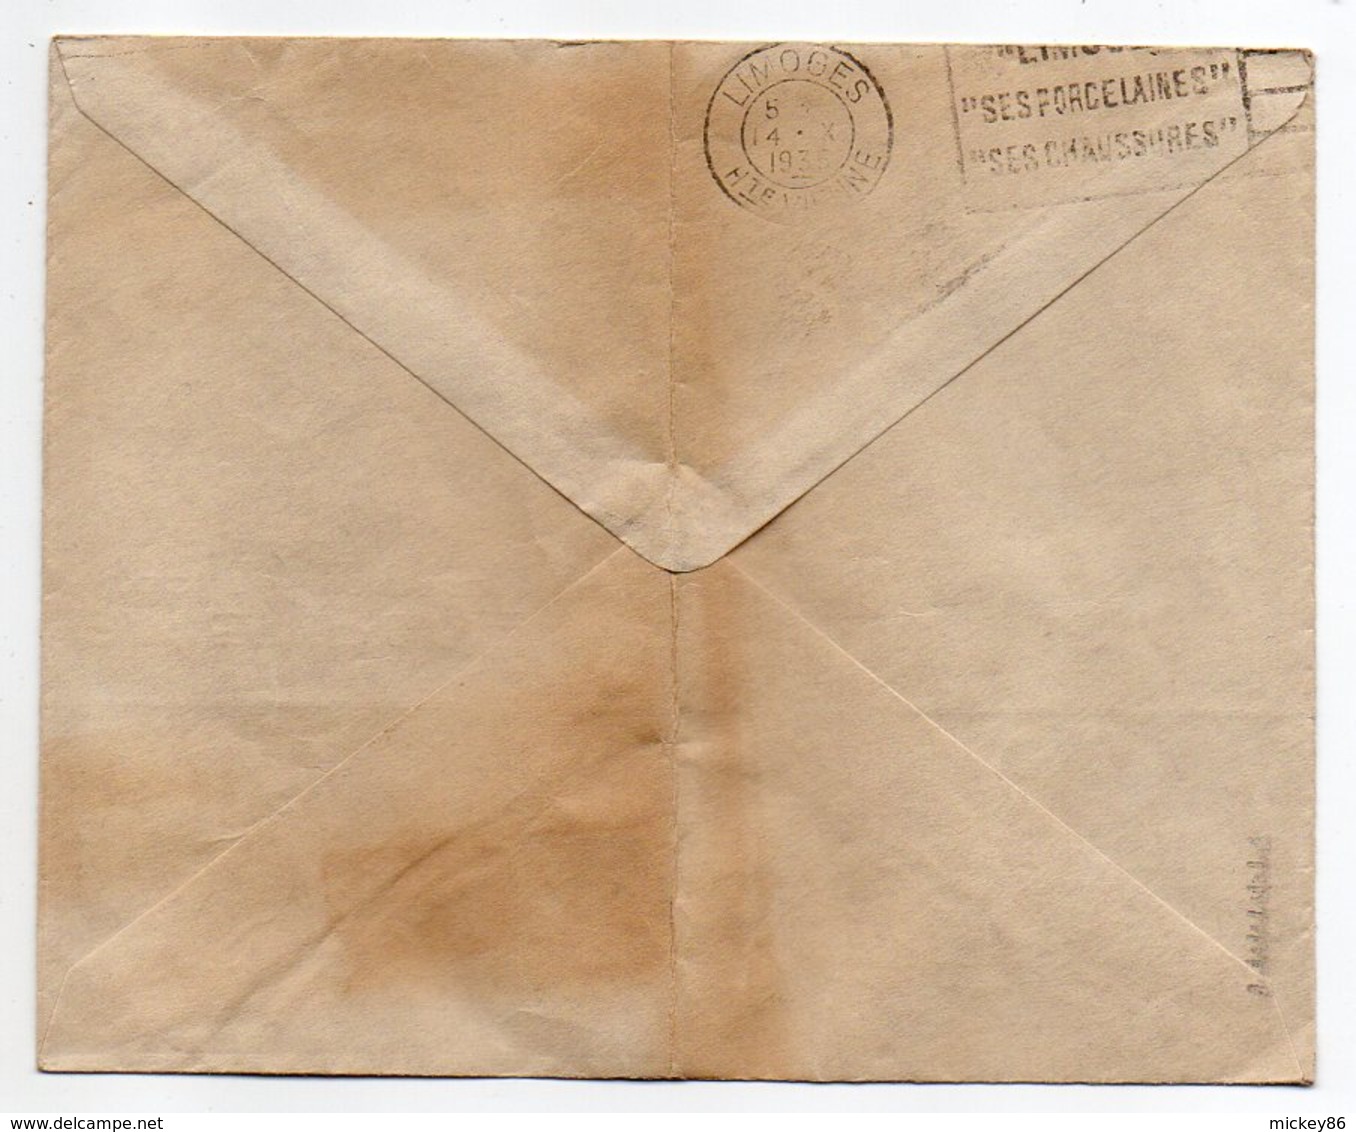 Suisse-1935--Lettre De BALE  Pour LIMOGES-87 (France)-timbre Seul Sur Lettre-cachet BASEL 1--G.KIEFFER & Cie - Briefe U. Dokumente